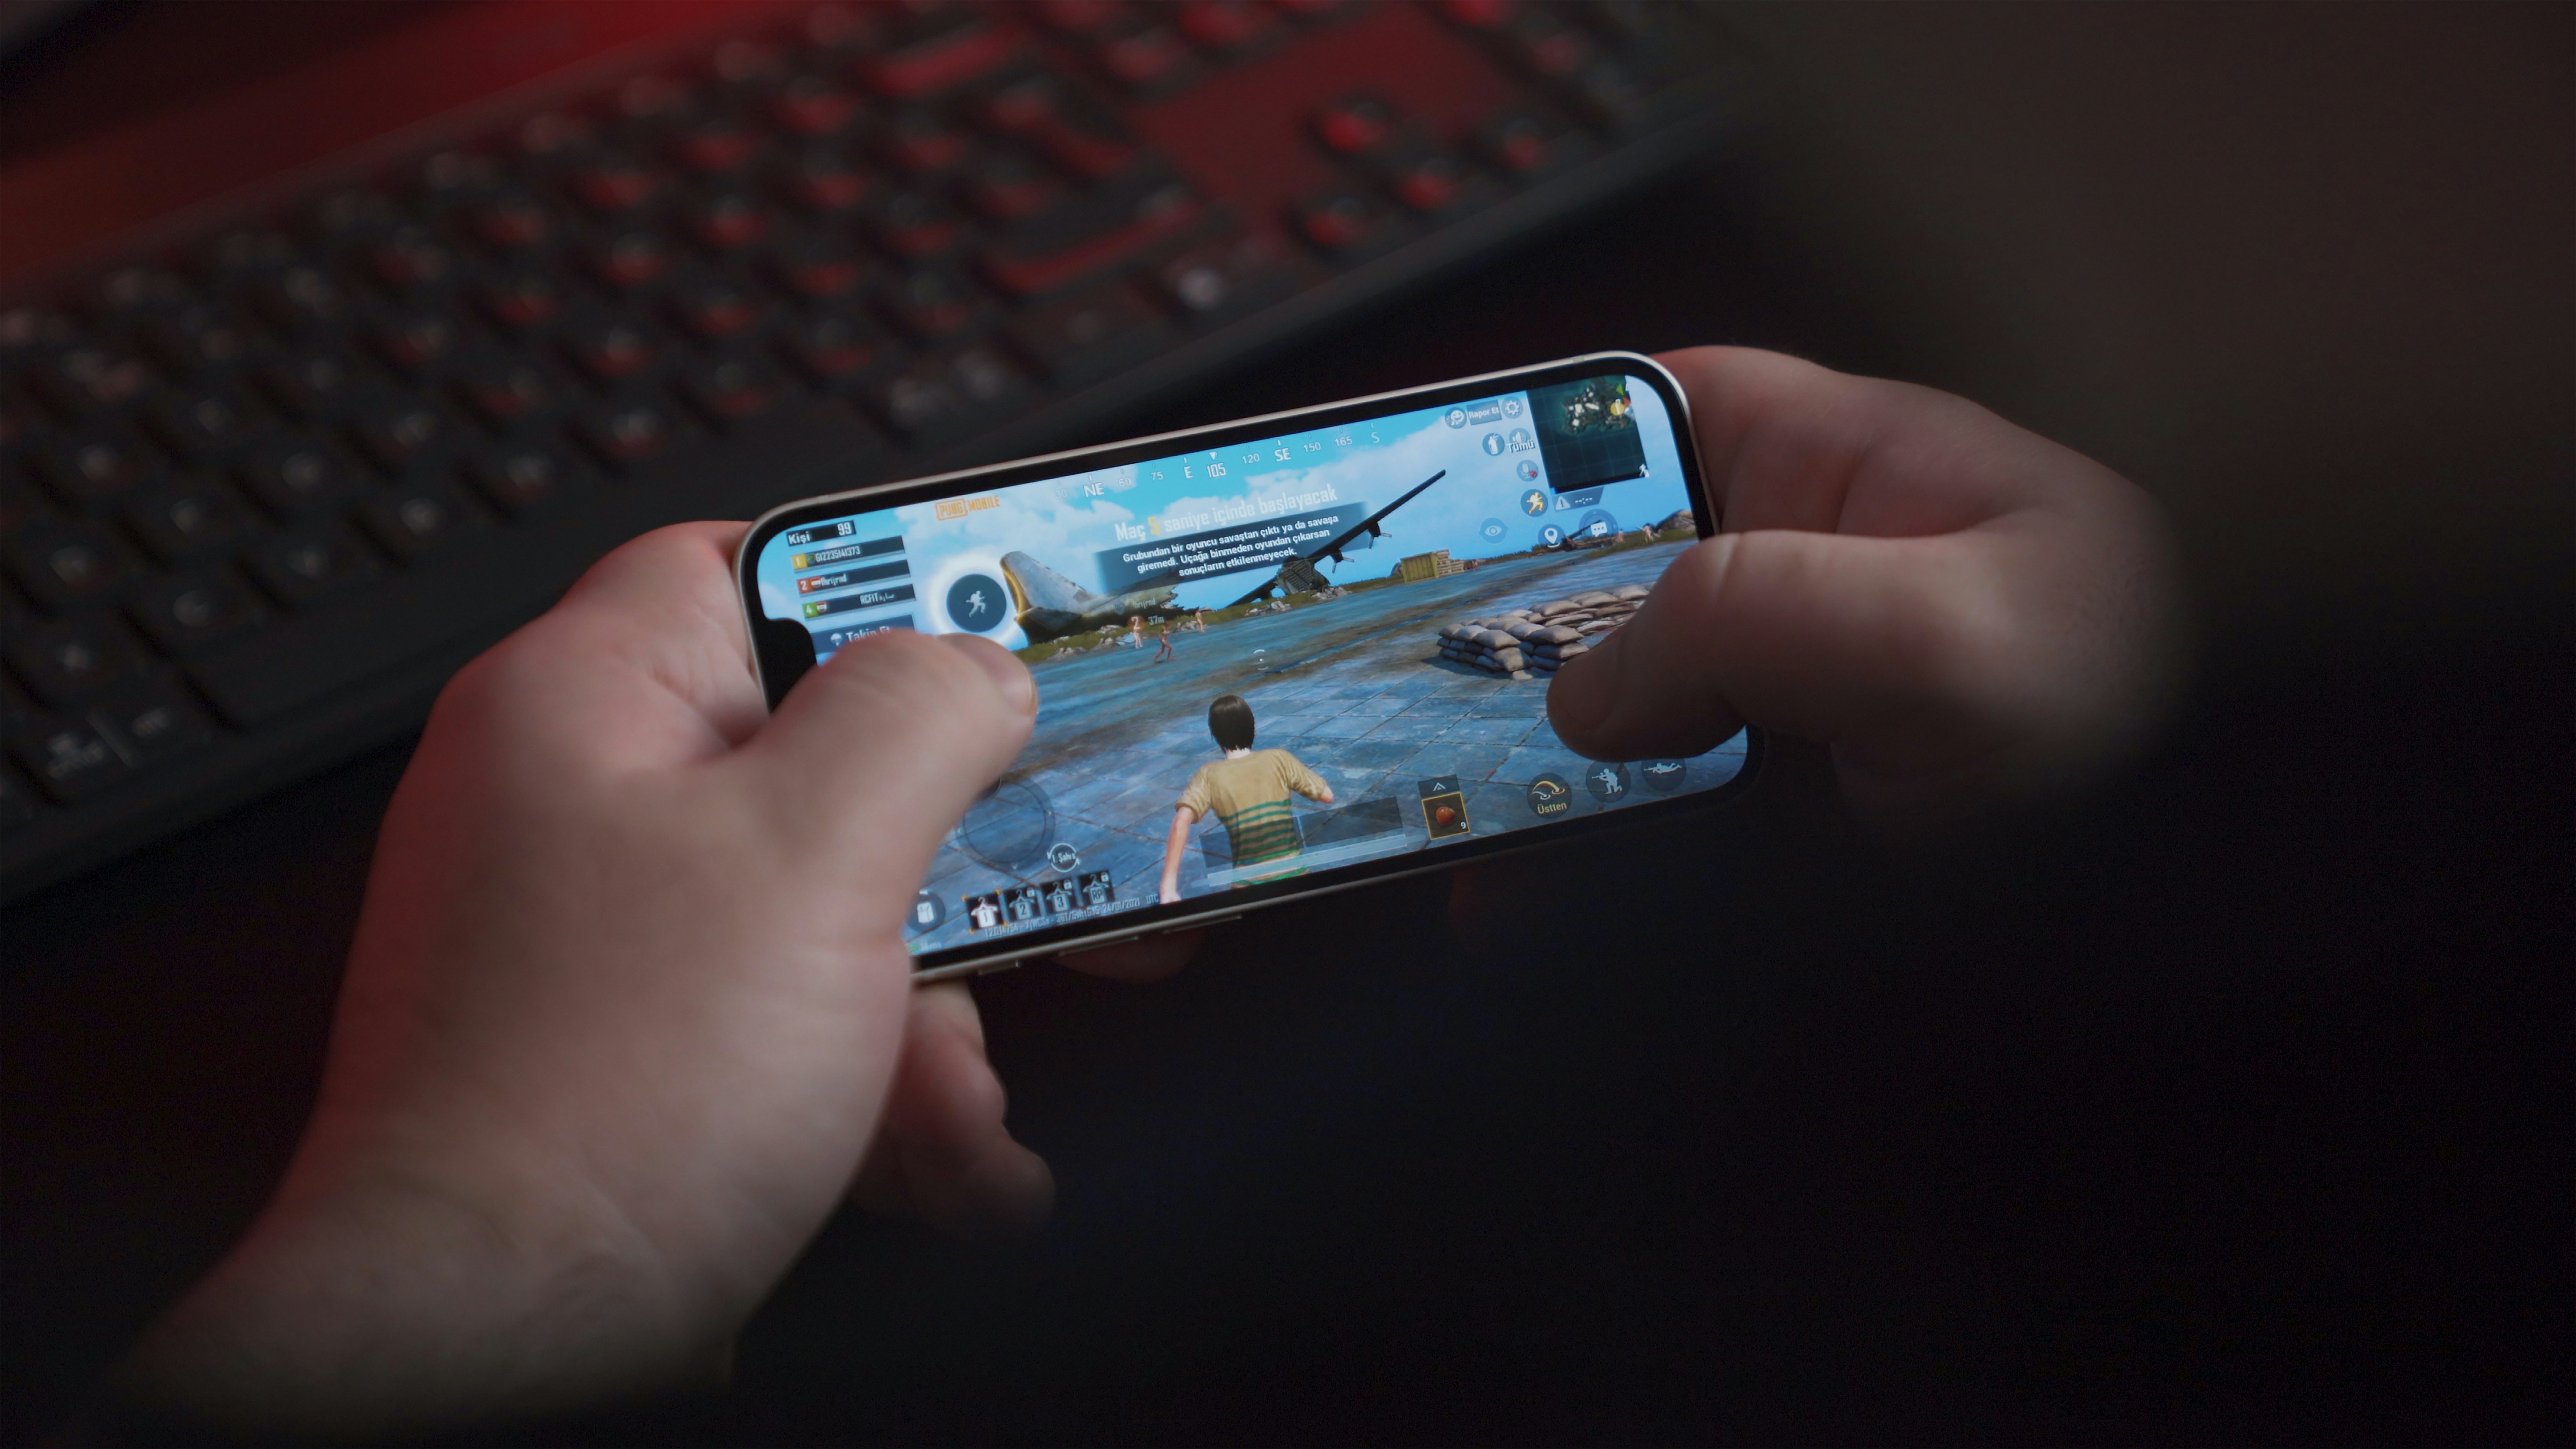 Mobil Oyun Performansını En Üst Düzeye Çıkarma: Cihazınızın IMEI'sinin Rolü - imei.info üzerinde haber resmi